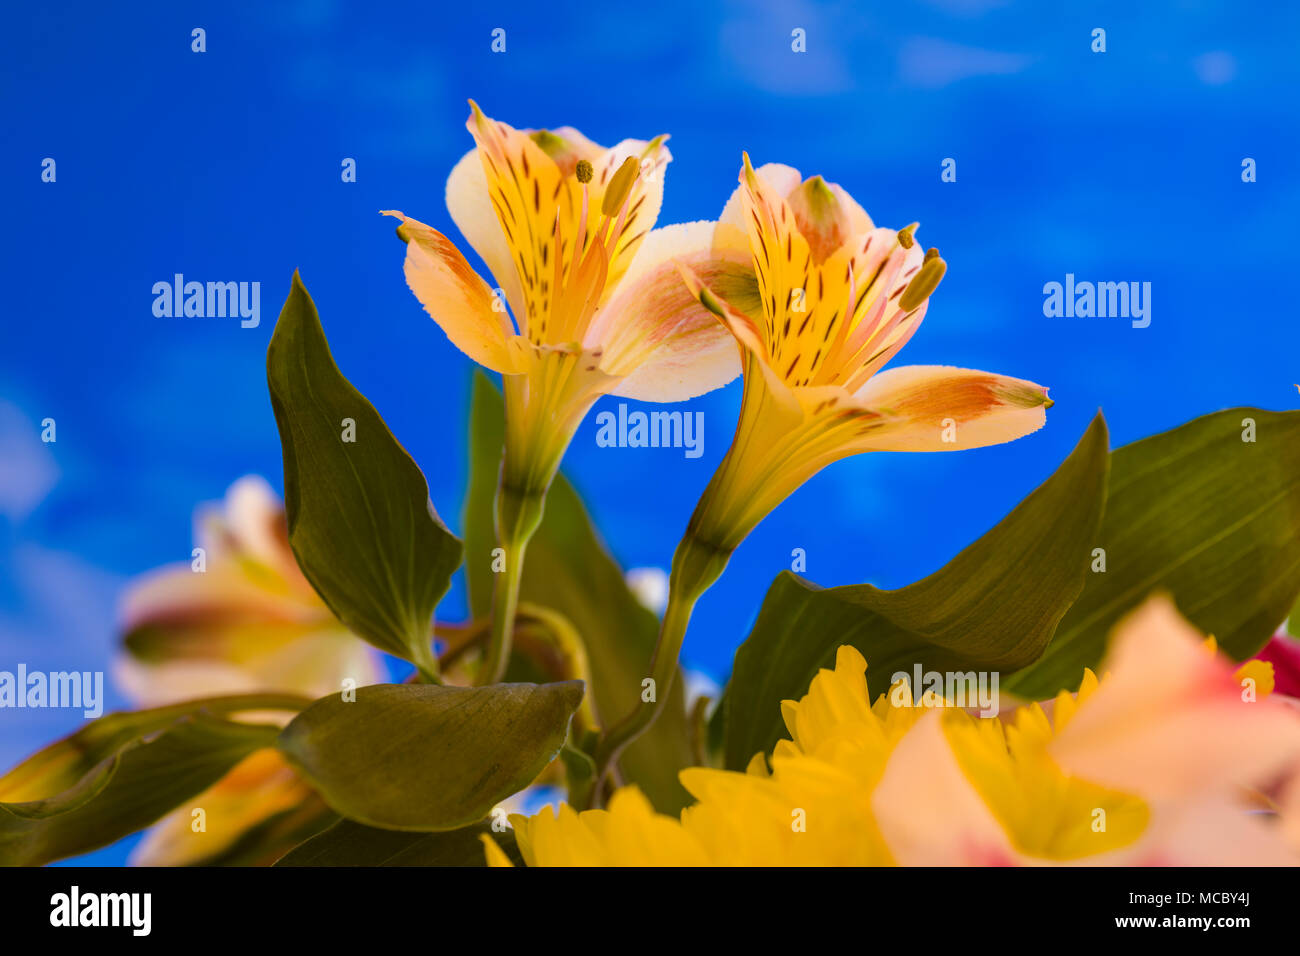 Libre d'Alstroemerias jaunes fleurs communément connu comme des lis péruviens ou lis des Incas contre un fond bleu Banque D'Images